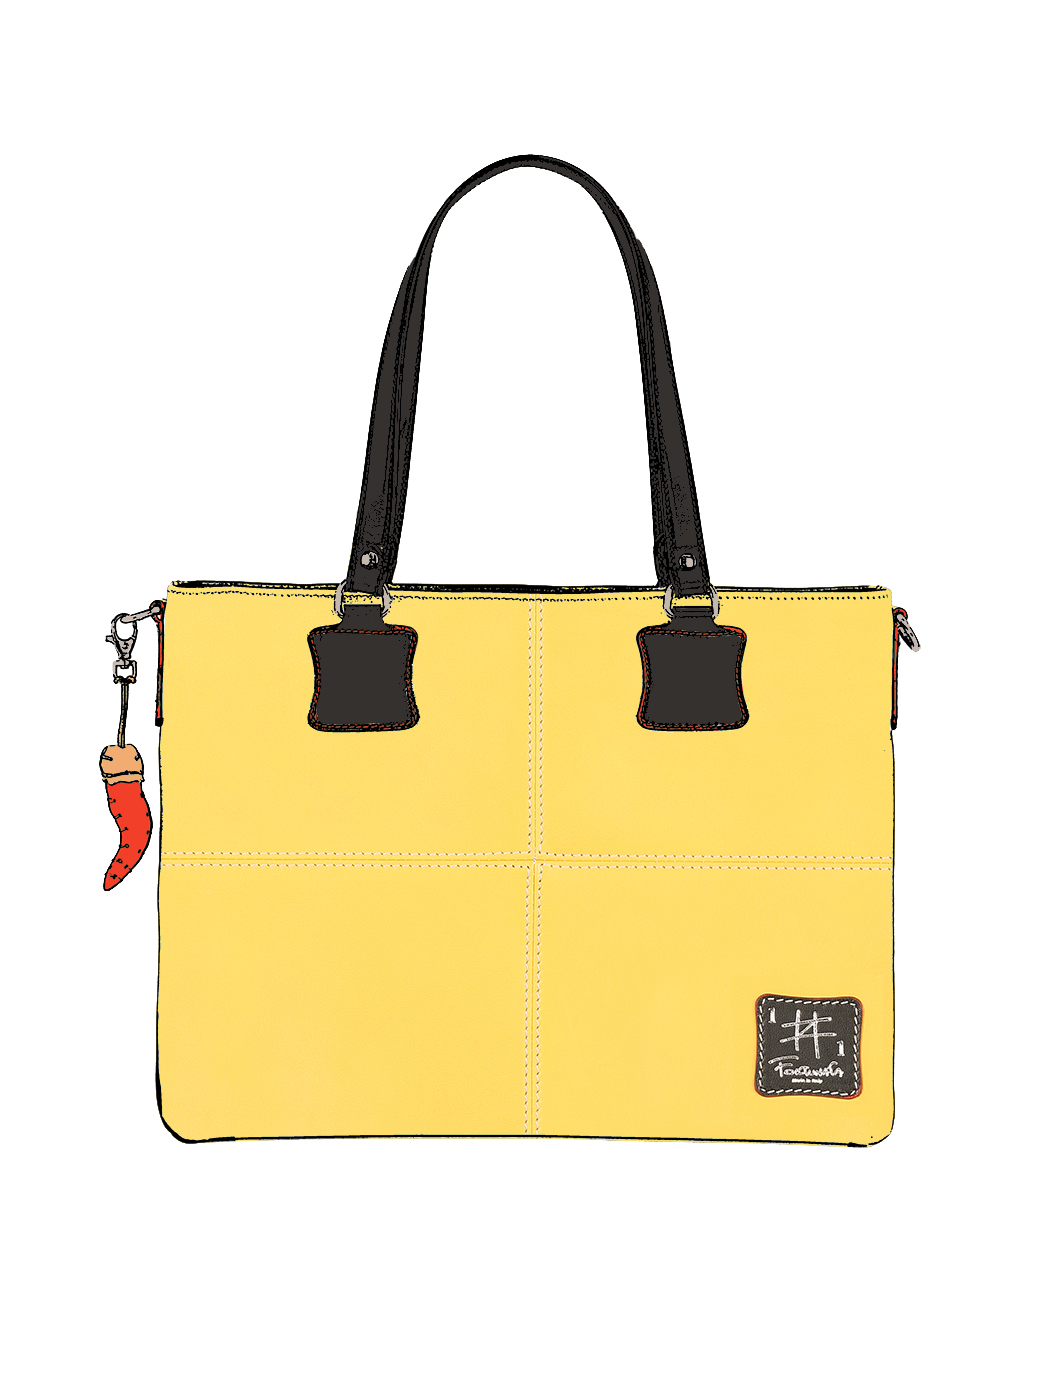 Дизайнерская сумка – шоппер из коллекции Fortunata желтого цвета